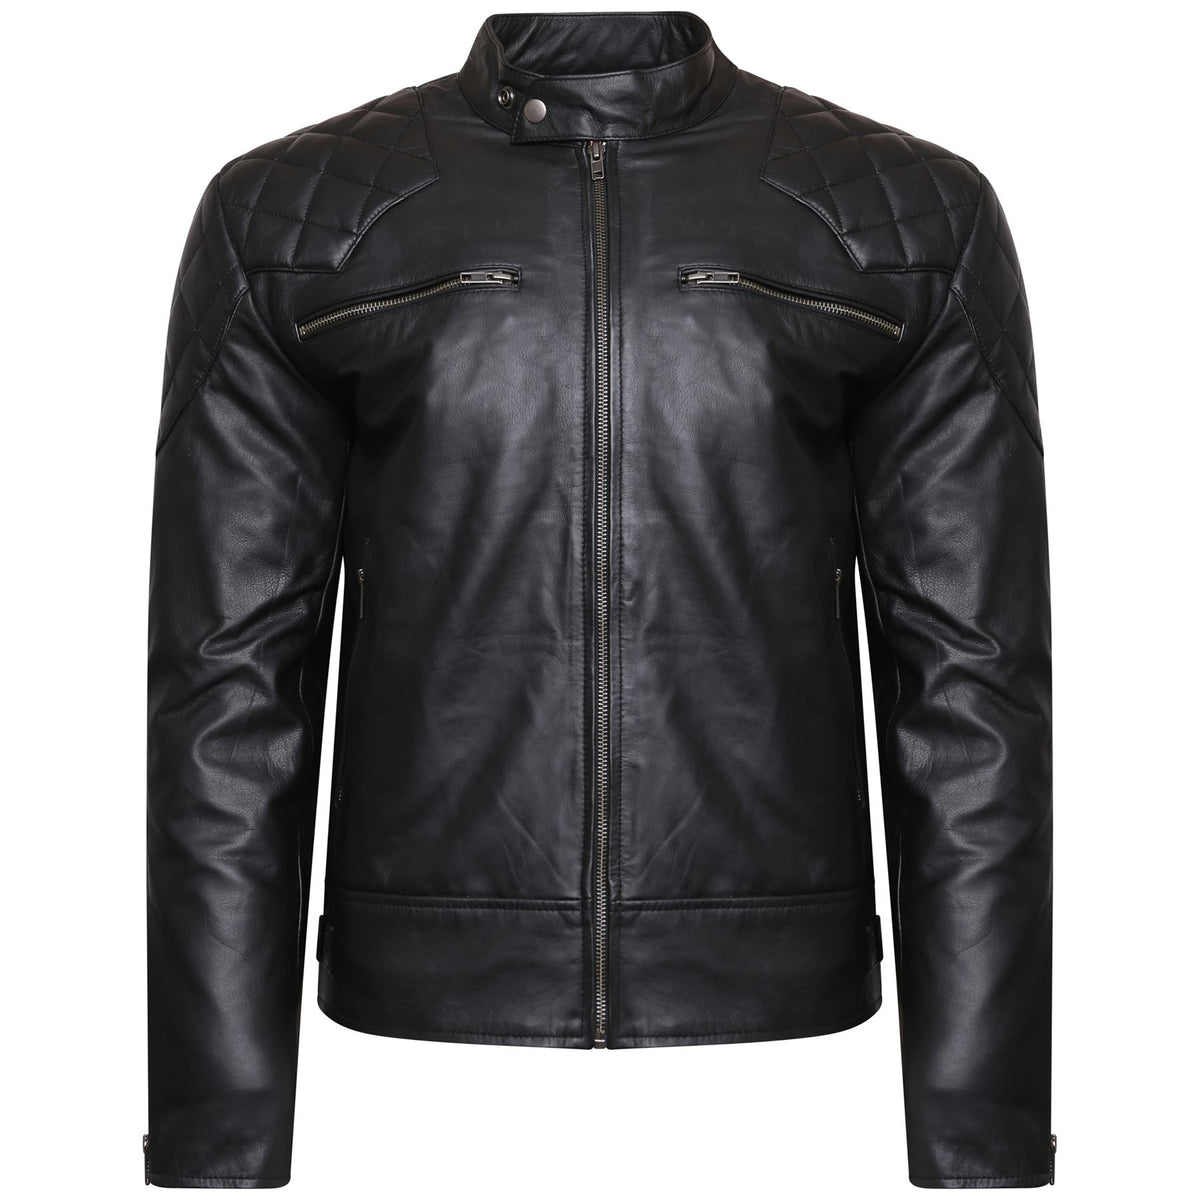 Mens Real Leather Black Cowhide Biker Jacket Vintage Retro Cafe Racer ...